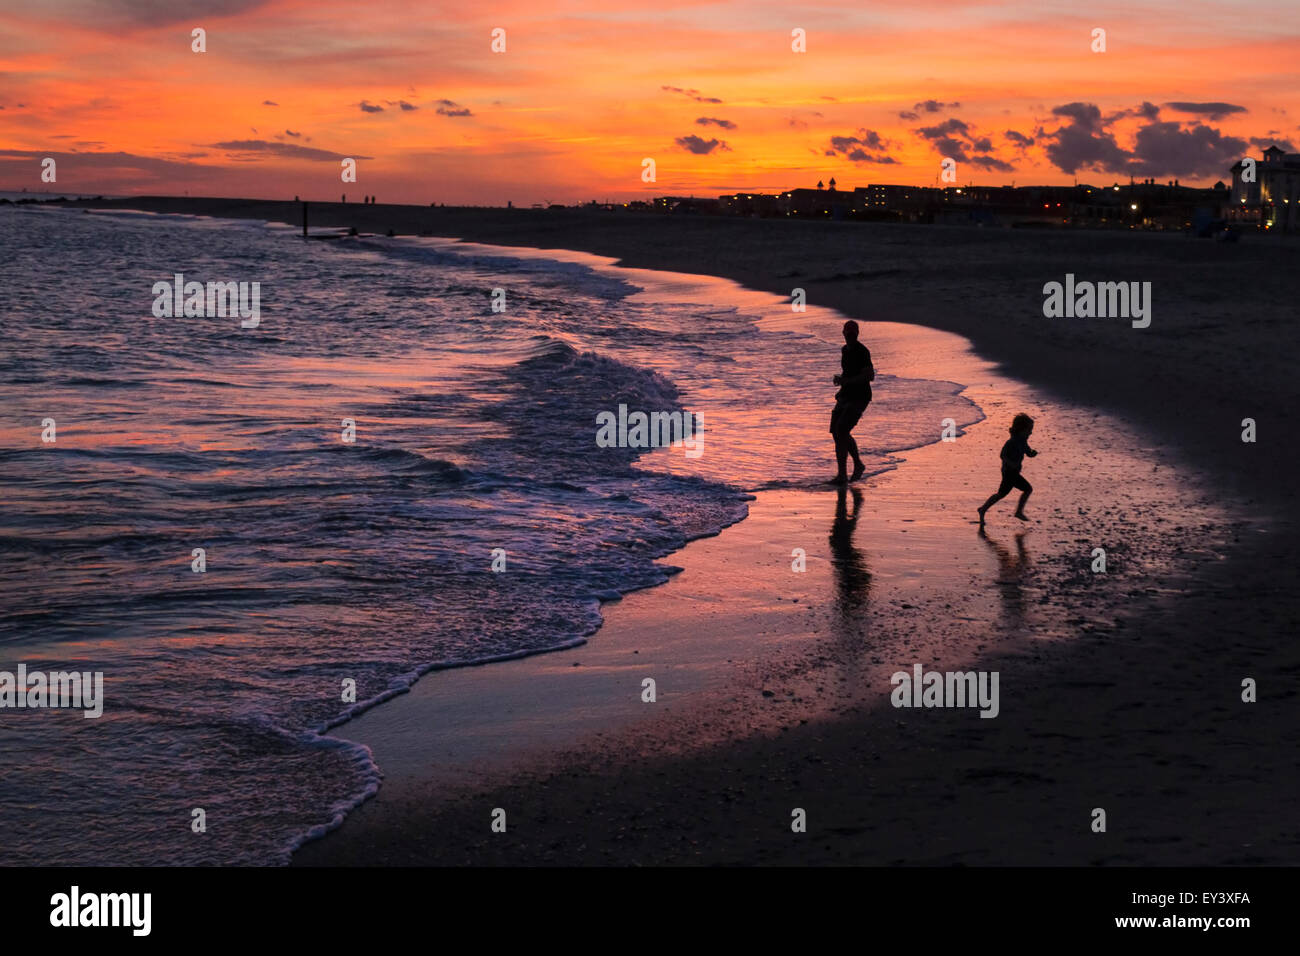 Vater und Sohn spielt auf einem sandigen Strand bei Sonnenuntergang. Stockfoto